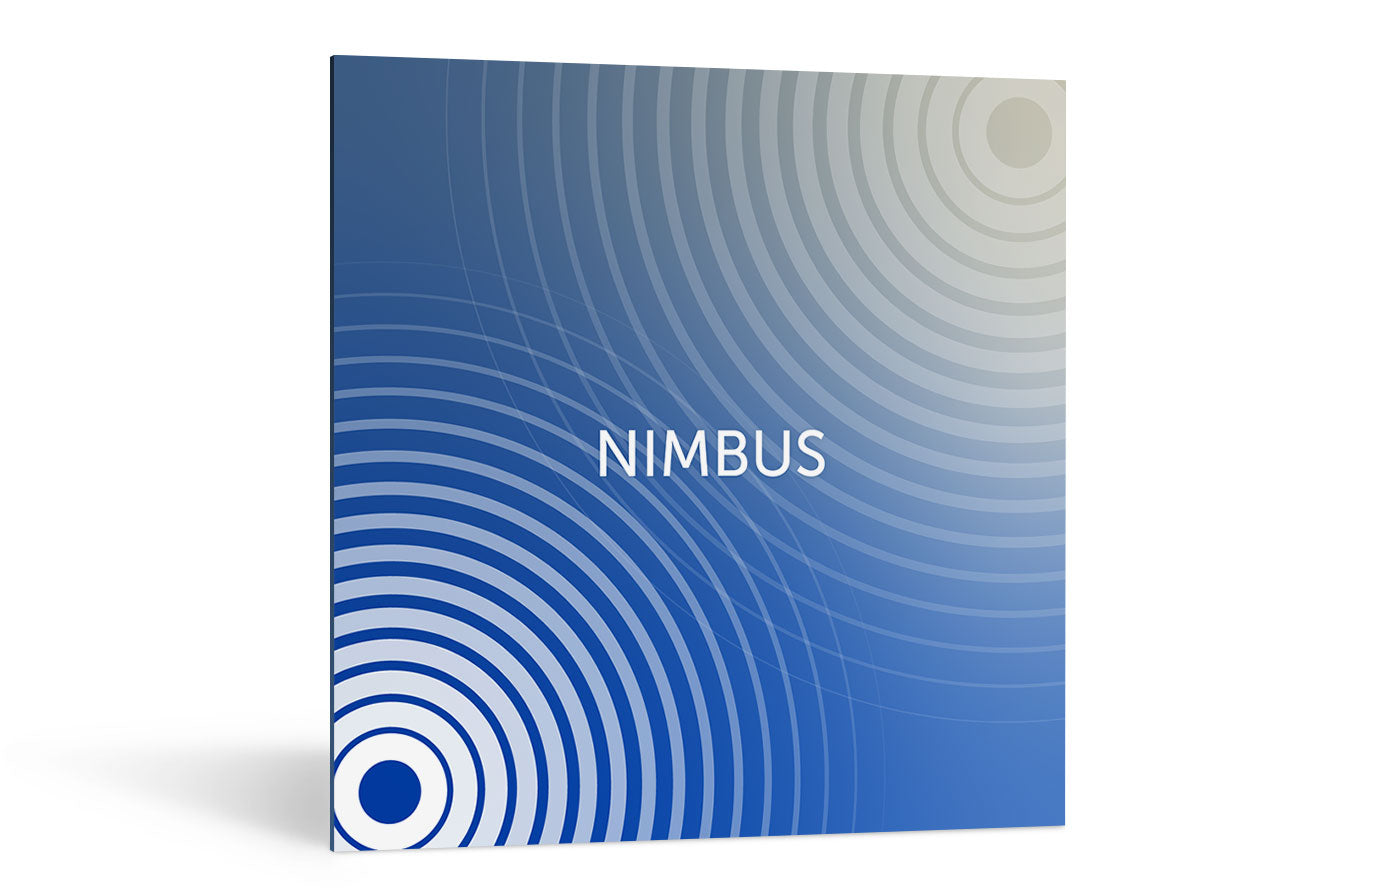 iZotope | Exponential Audio: Nimbus